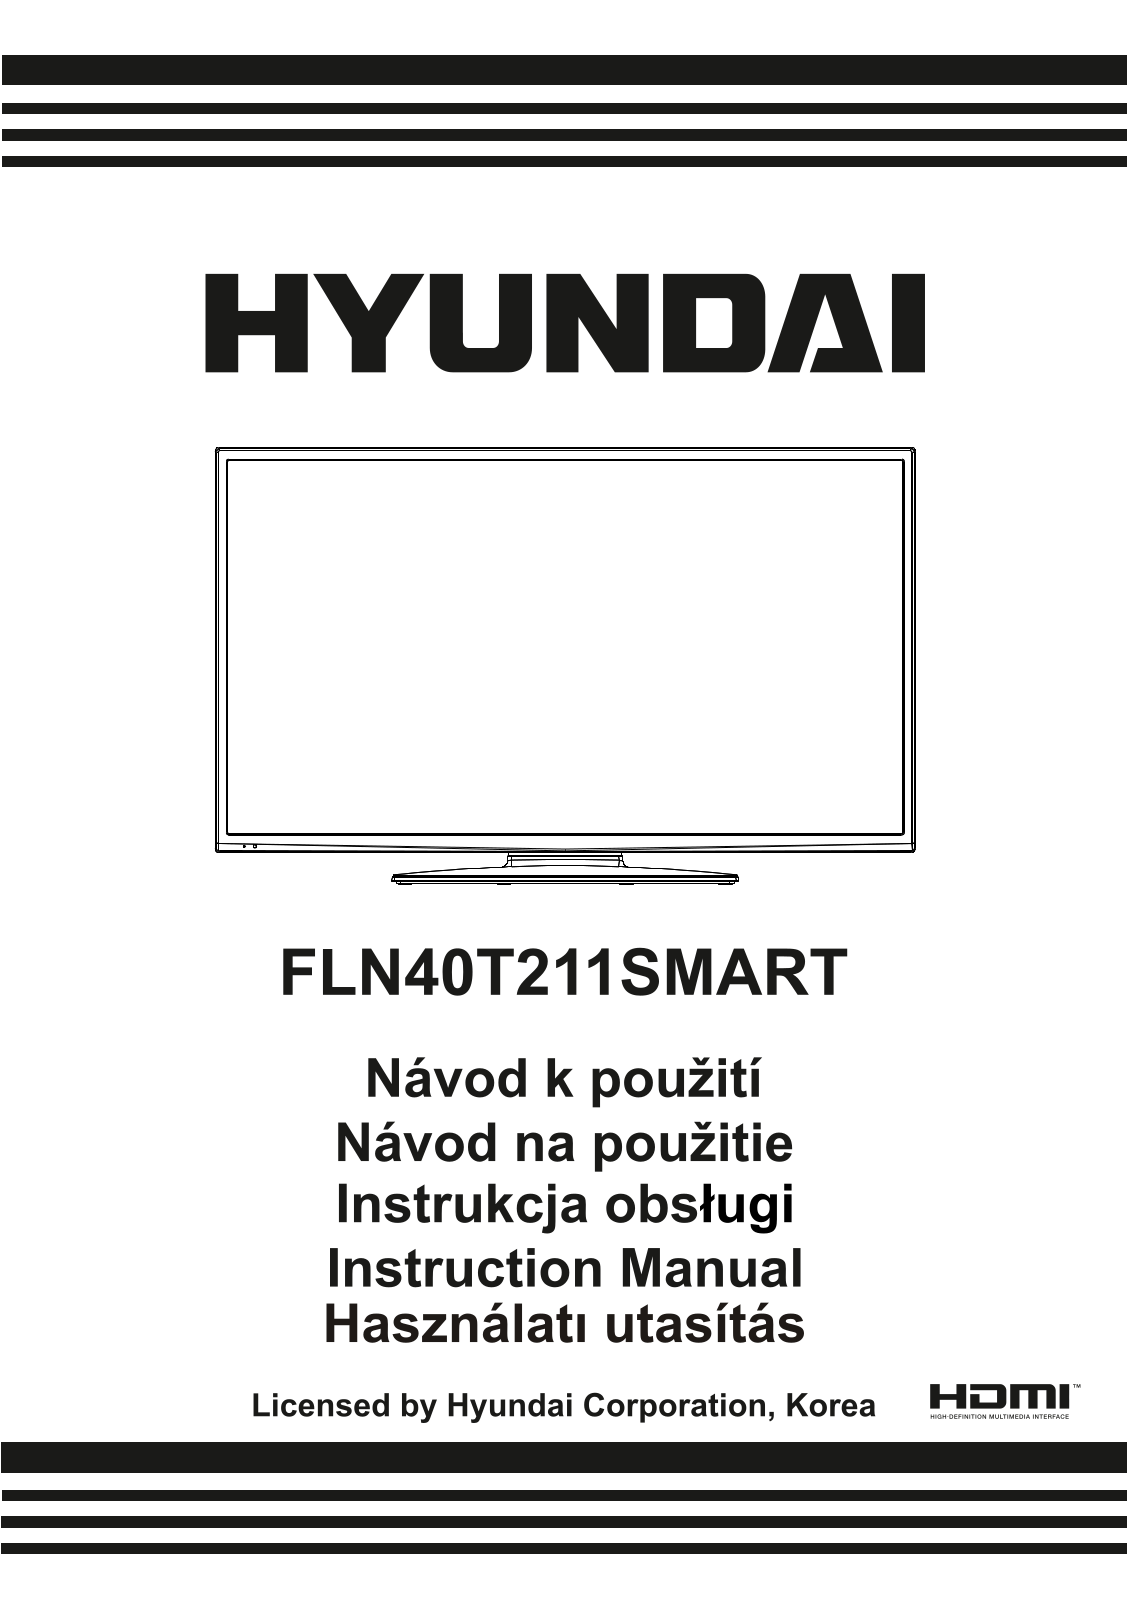 Hyundai FLN 40T211 SMART Manual